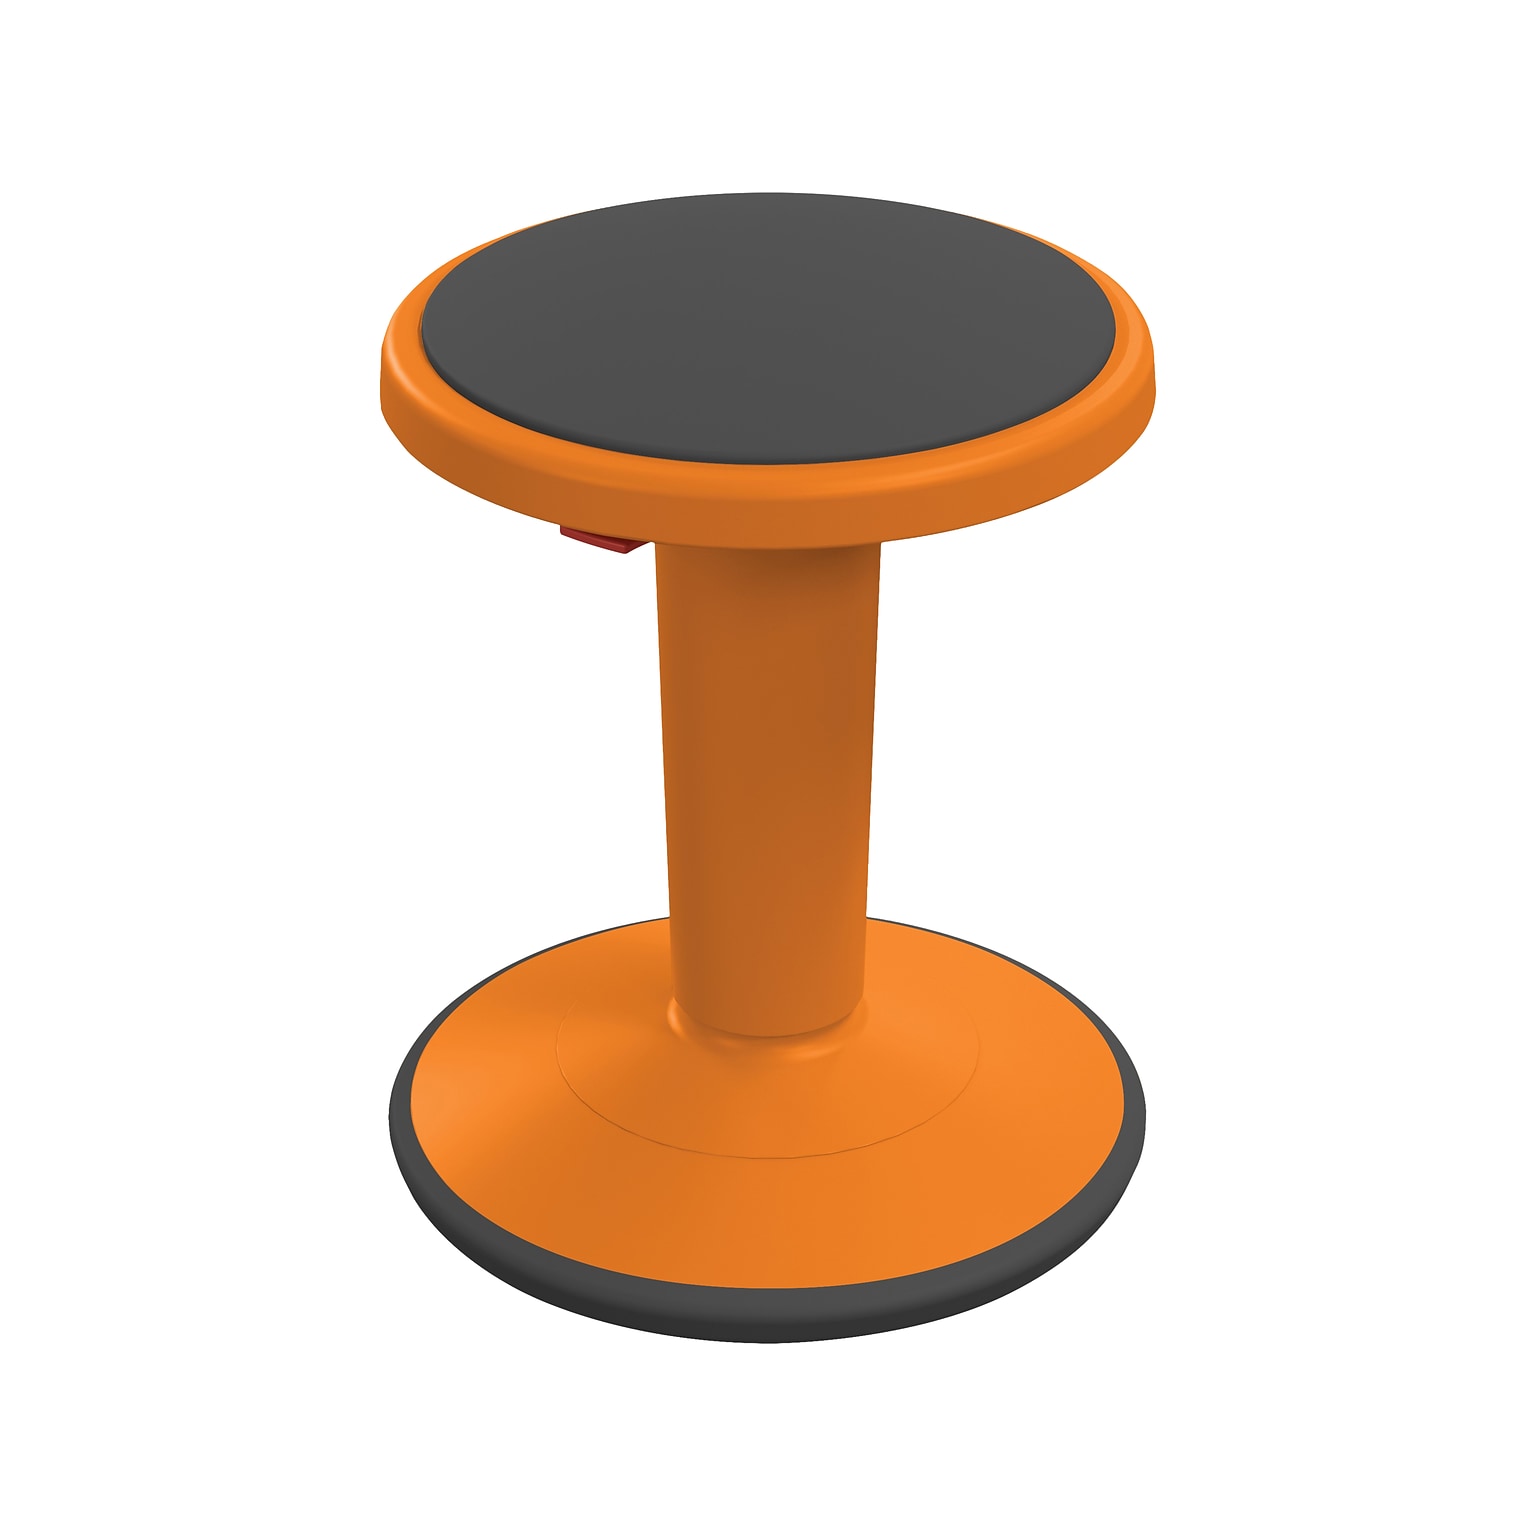 MooreCo Hierarchy Grow Plastic School Chair, Orange (50960-Orange)